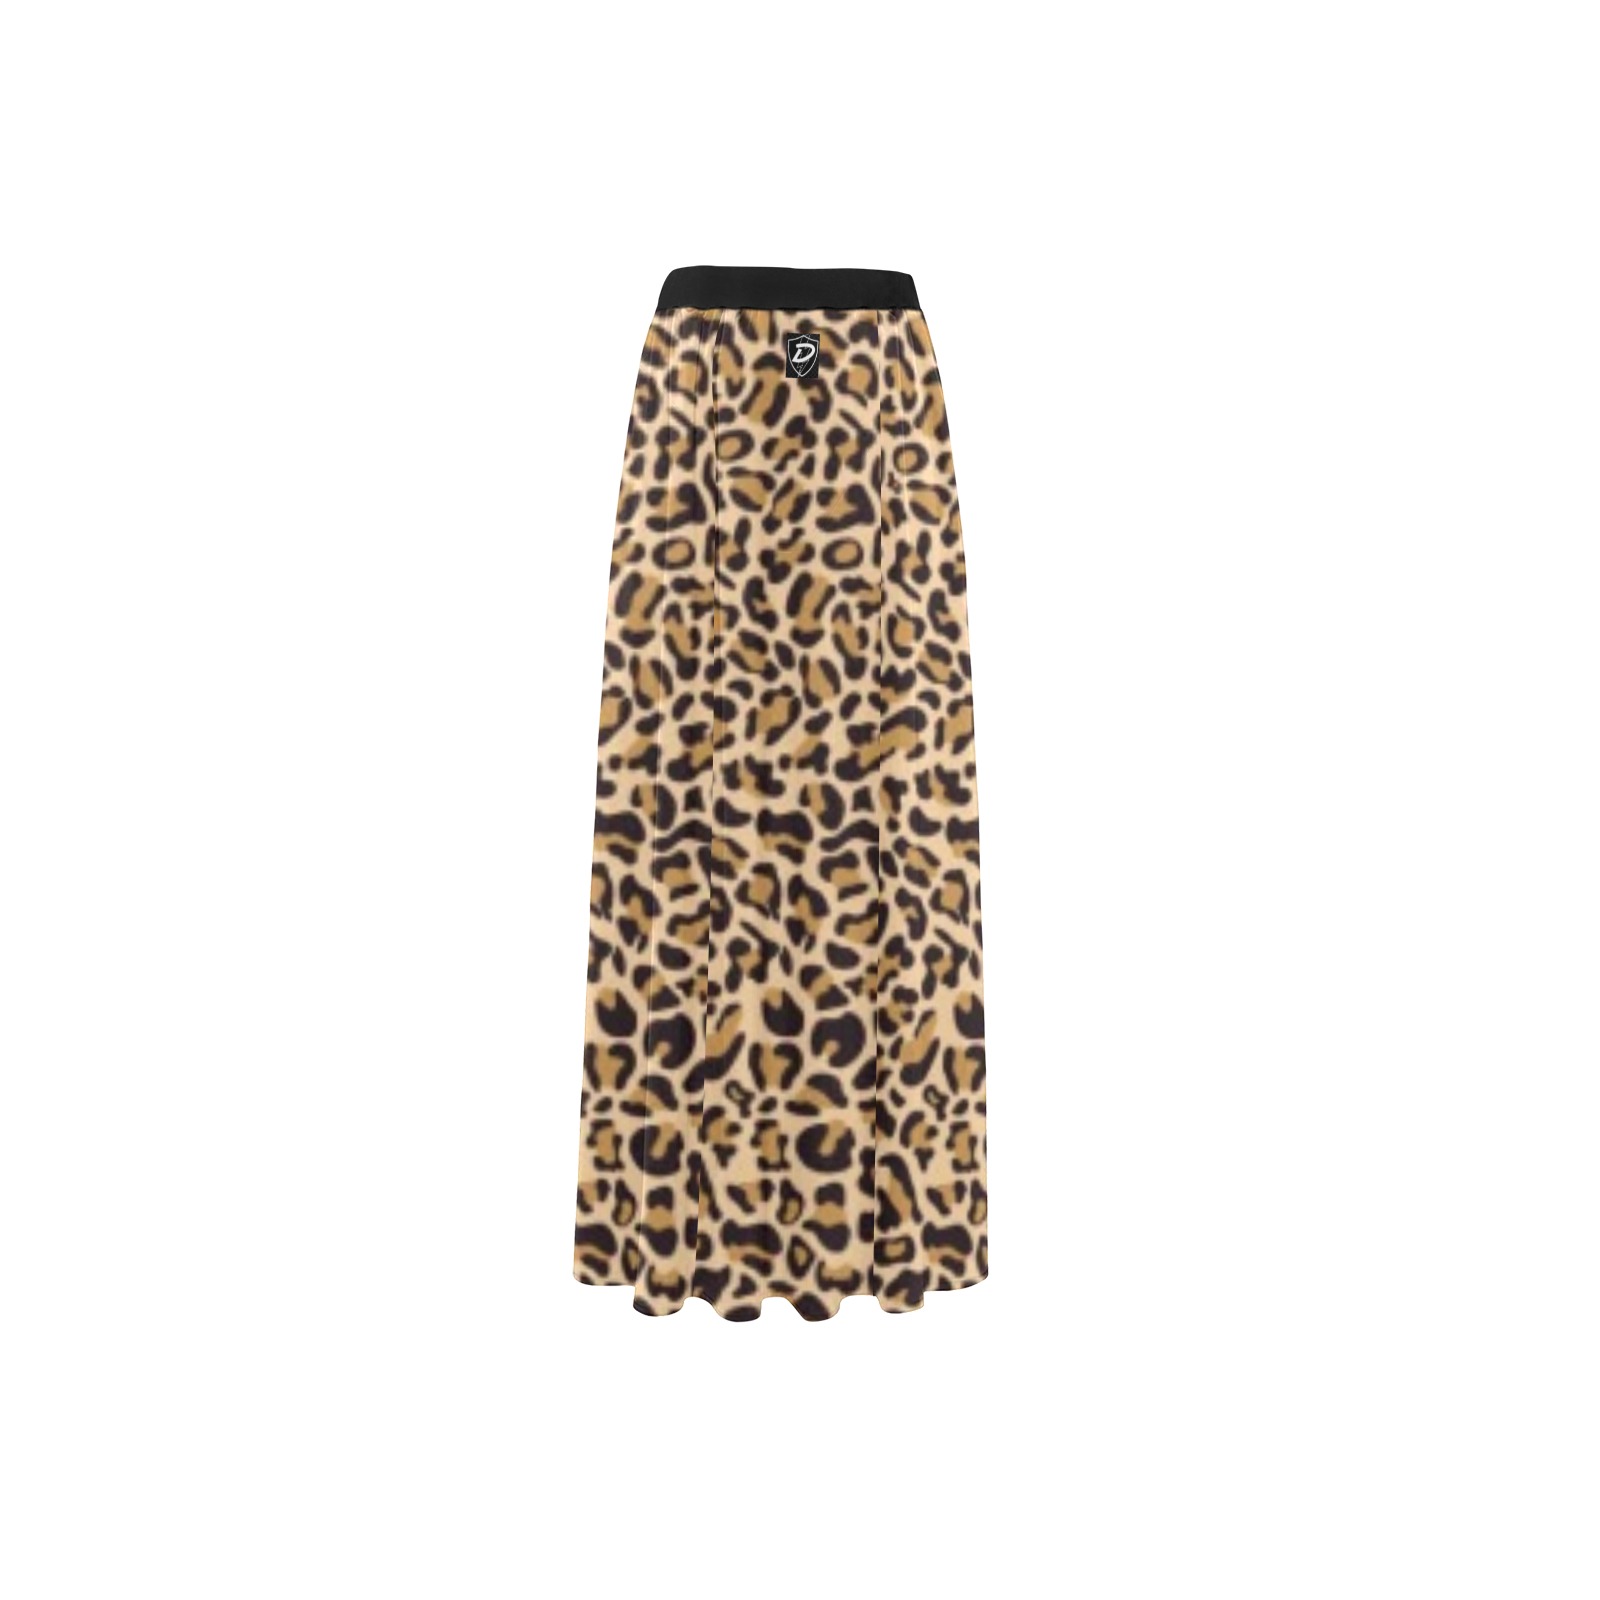 Dionio Clothing - Cheetah High Slit Long Beach Dress High Slit Long Beach Dress (Model S40)